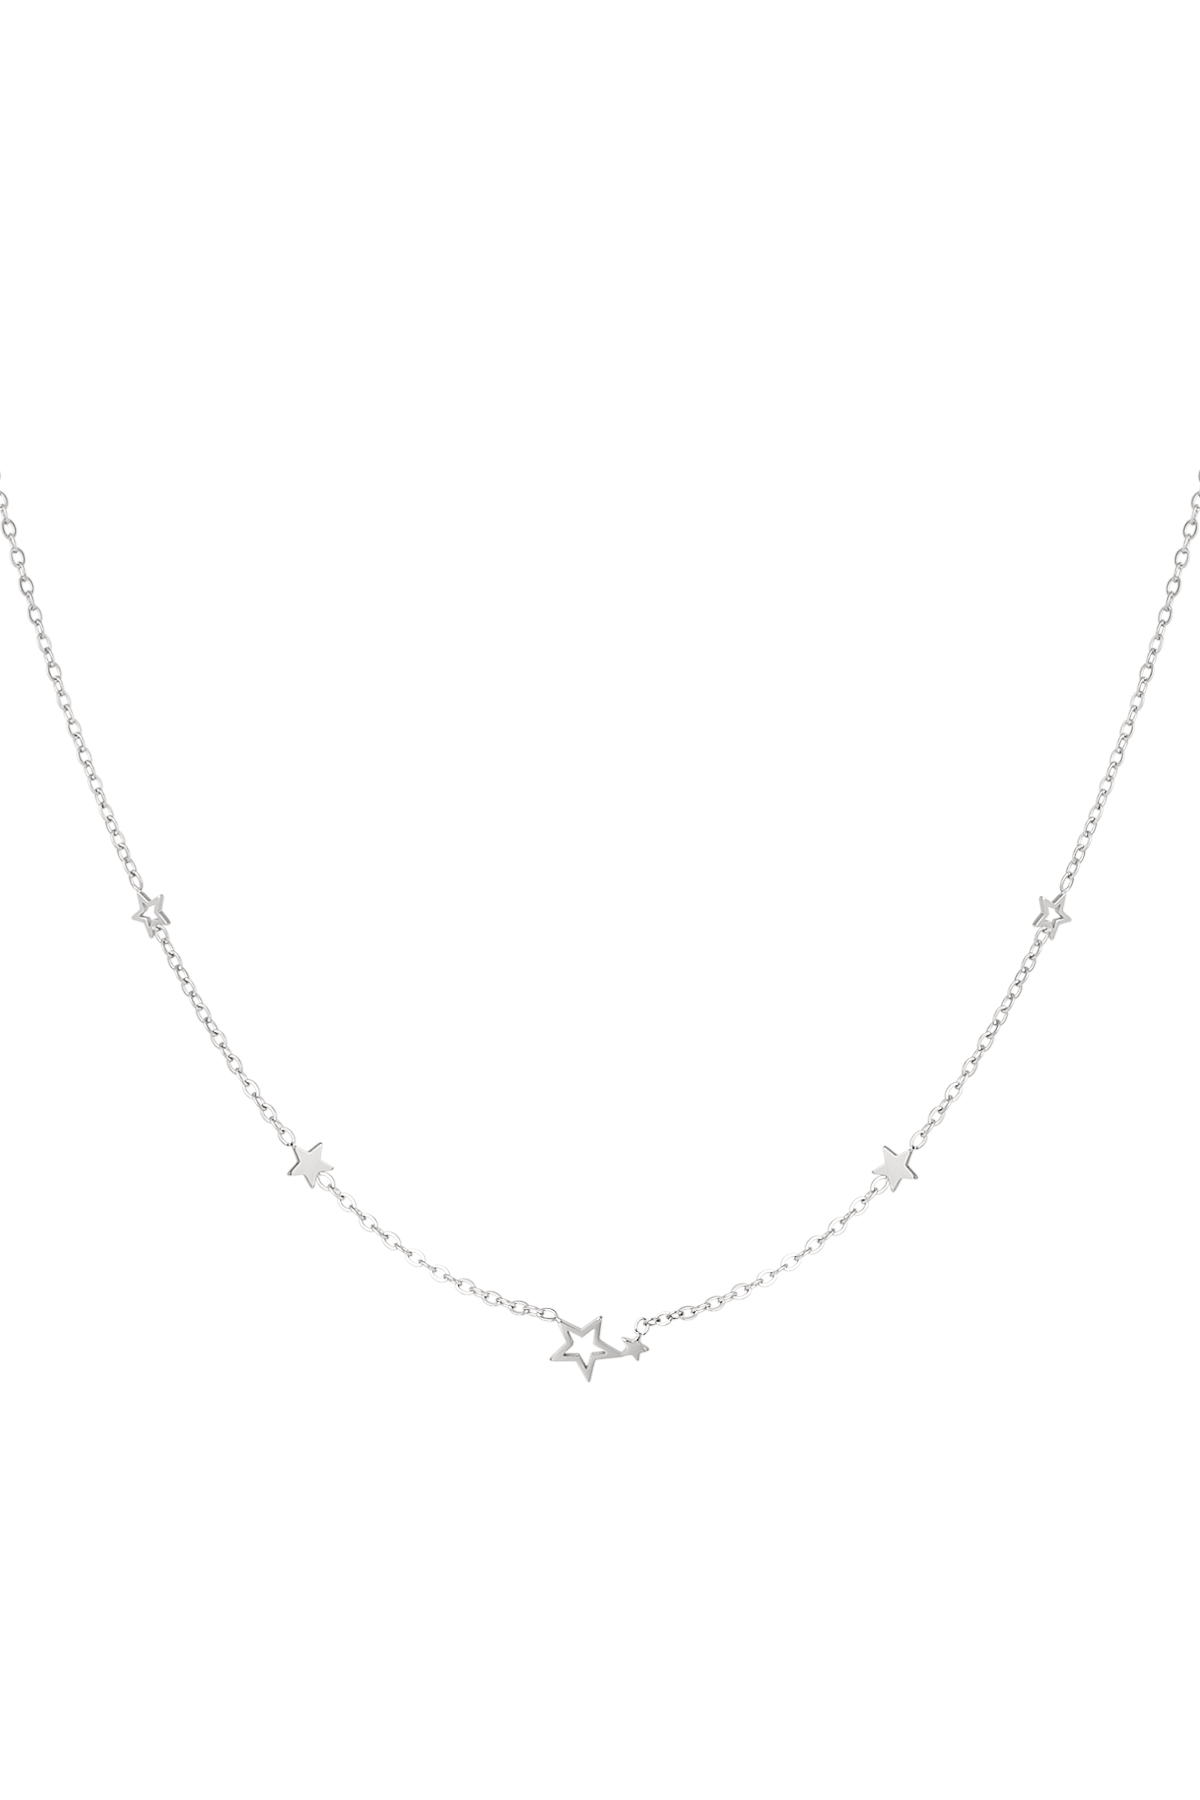 Halskette Edelstahlsterne - Silber